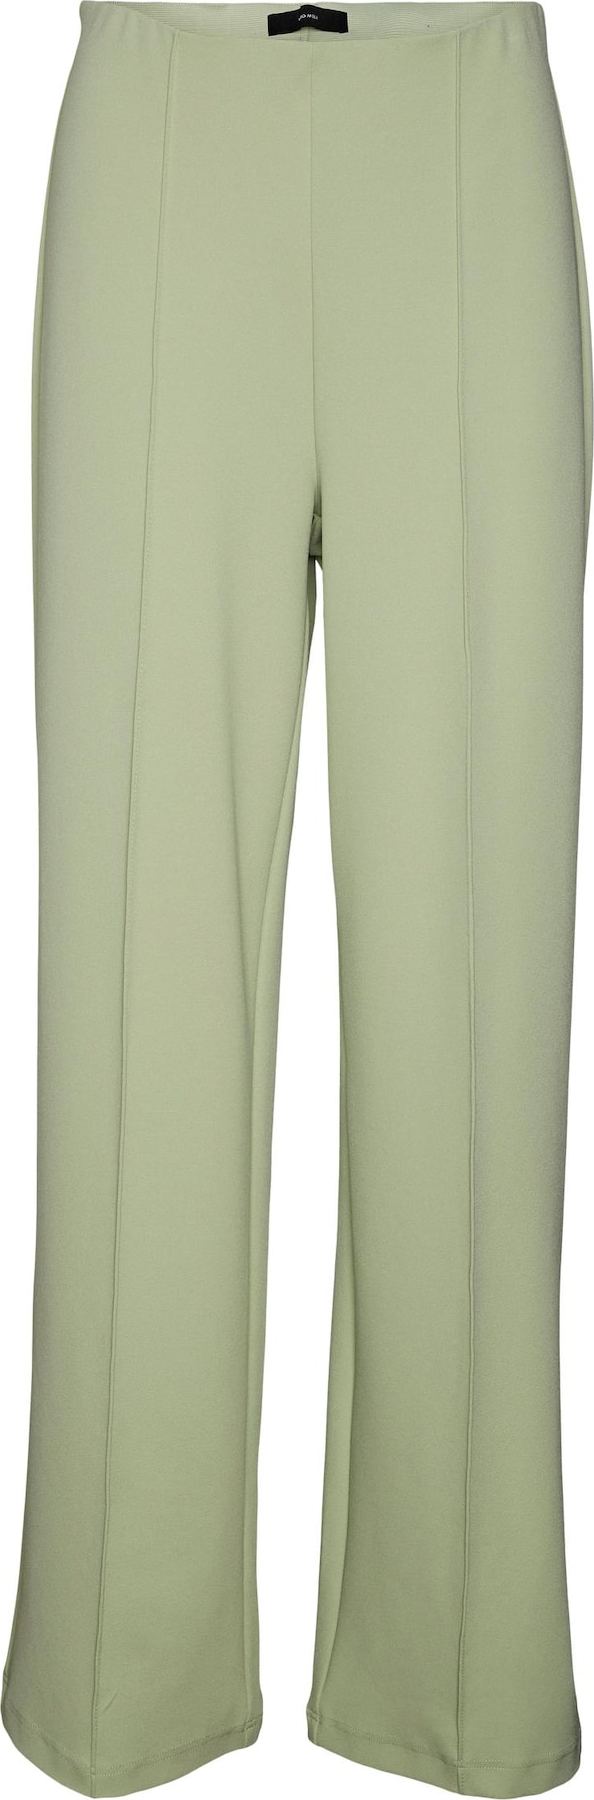 Kalhoty s puky 'Becky' Vero Moda pastelově zelená